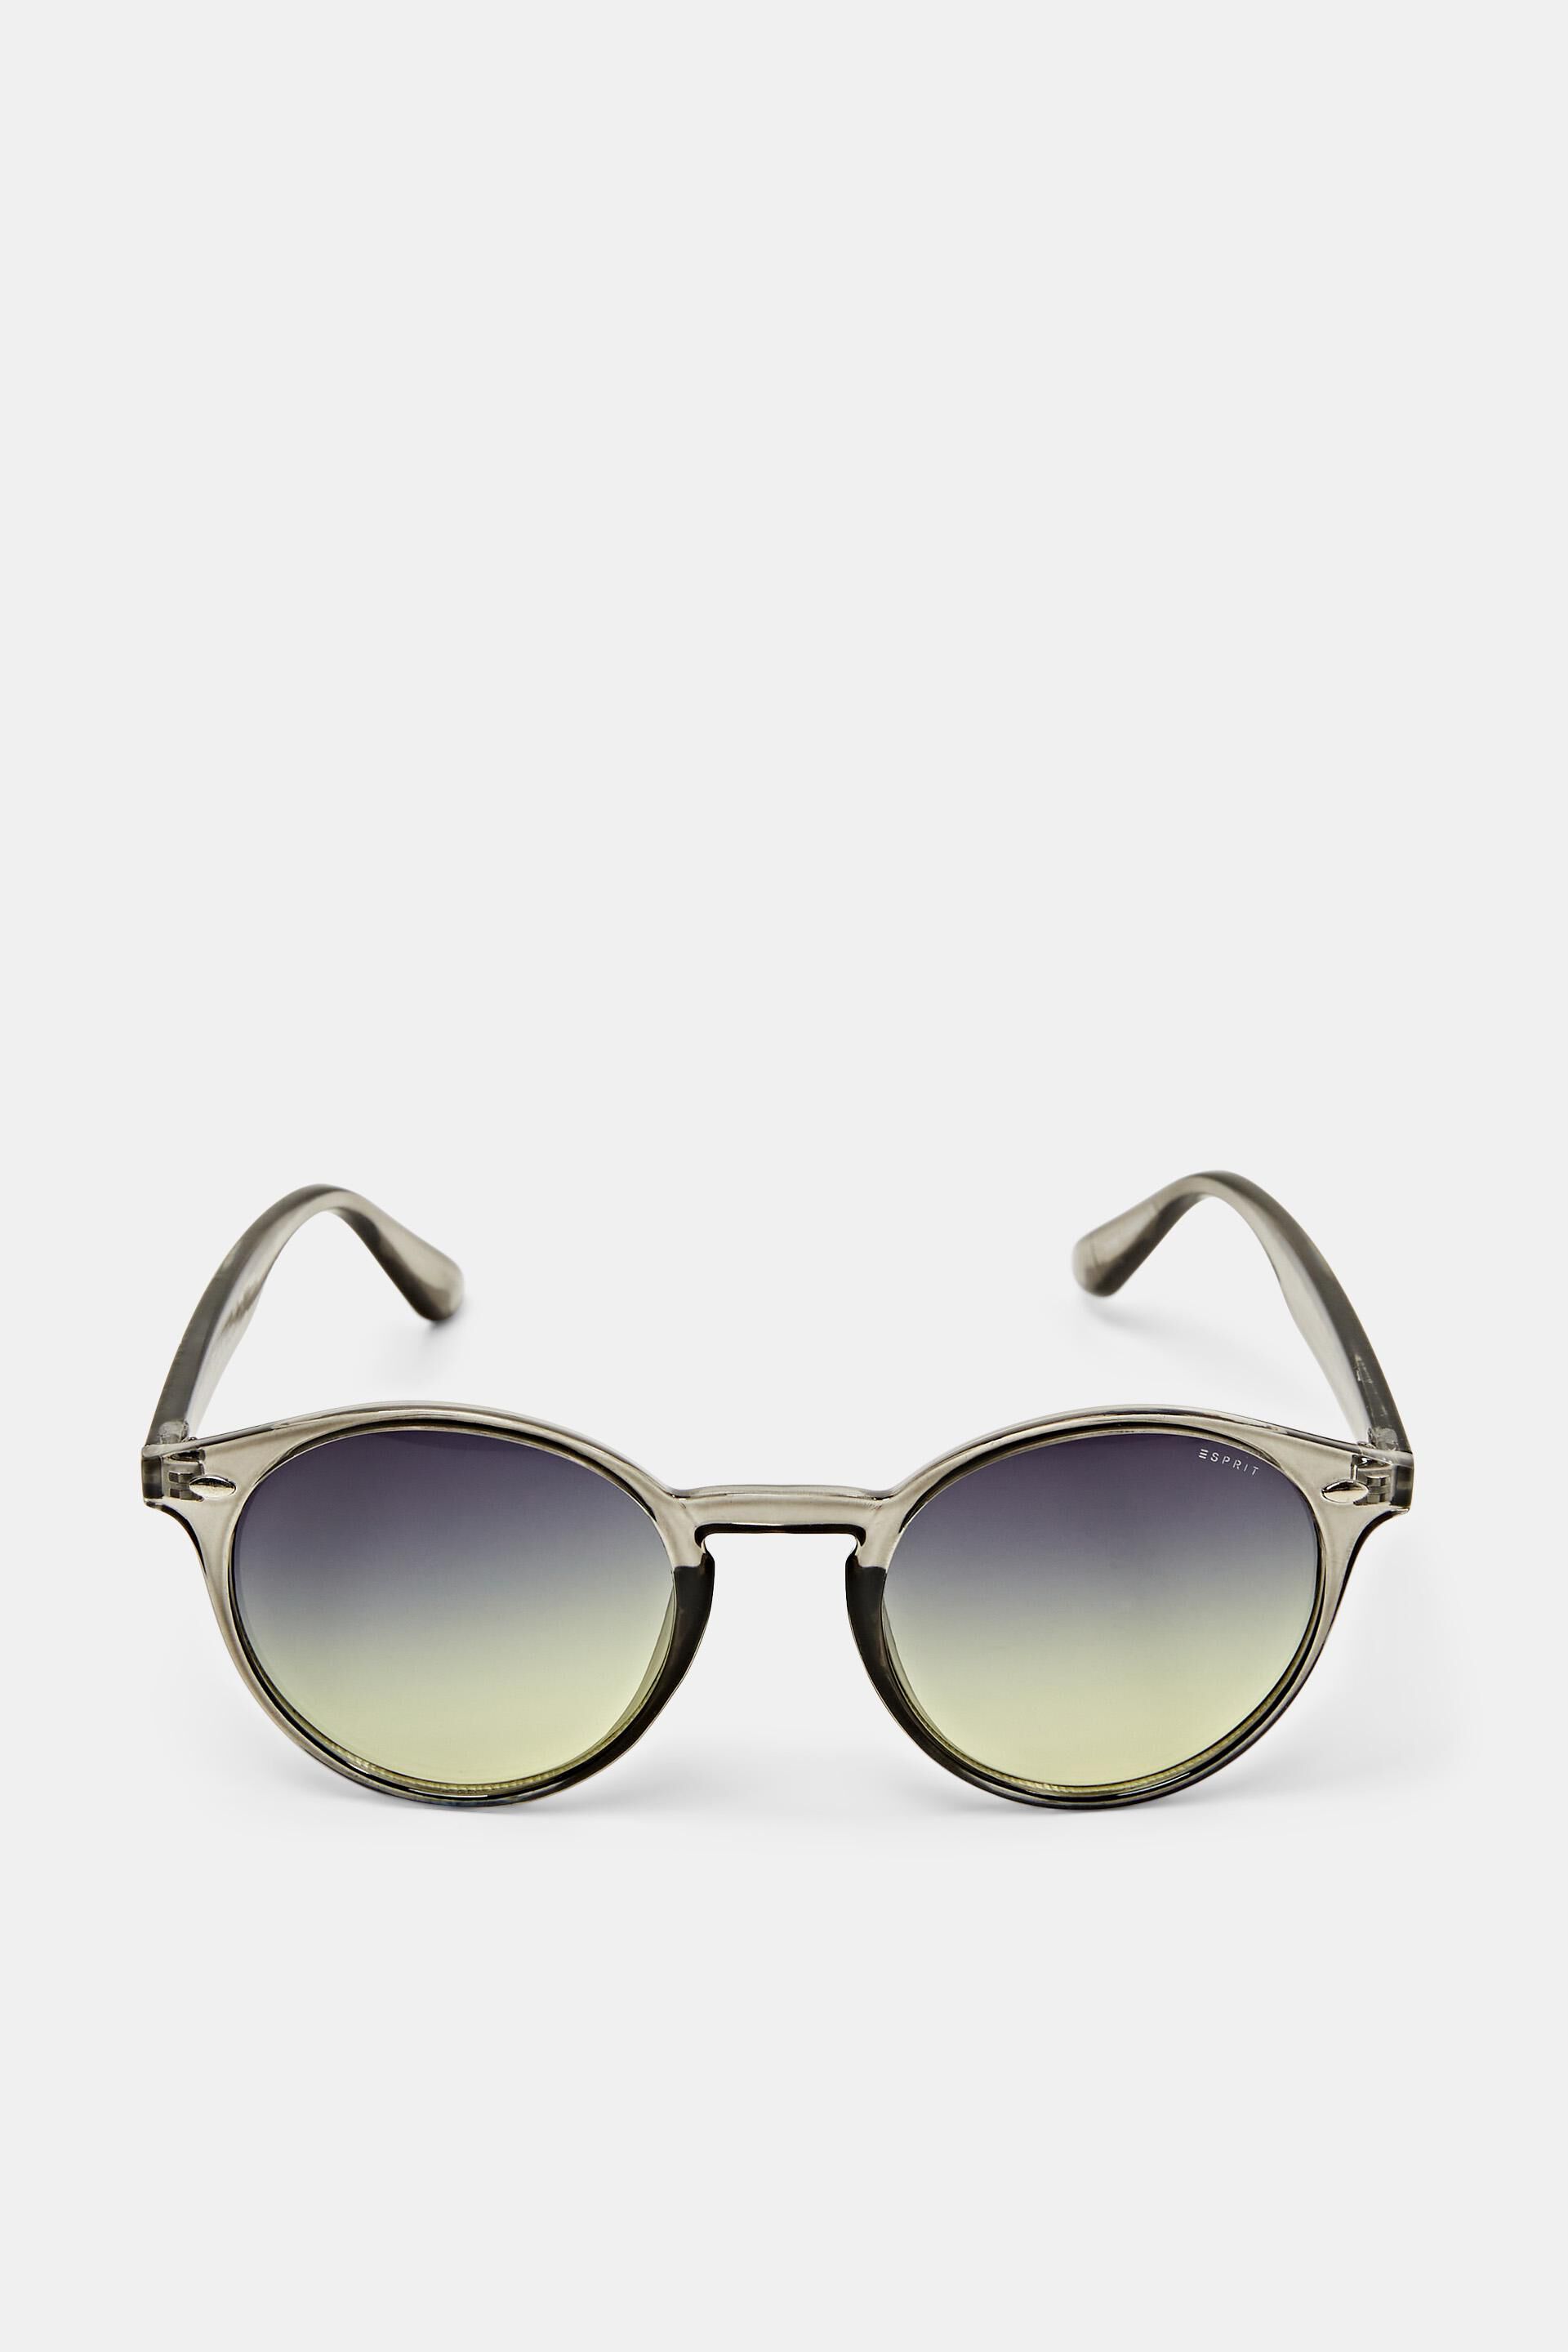 Esprit round Sunglasses with lenses